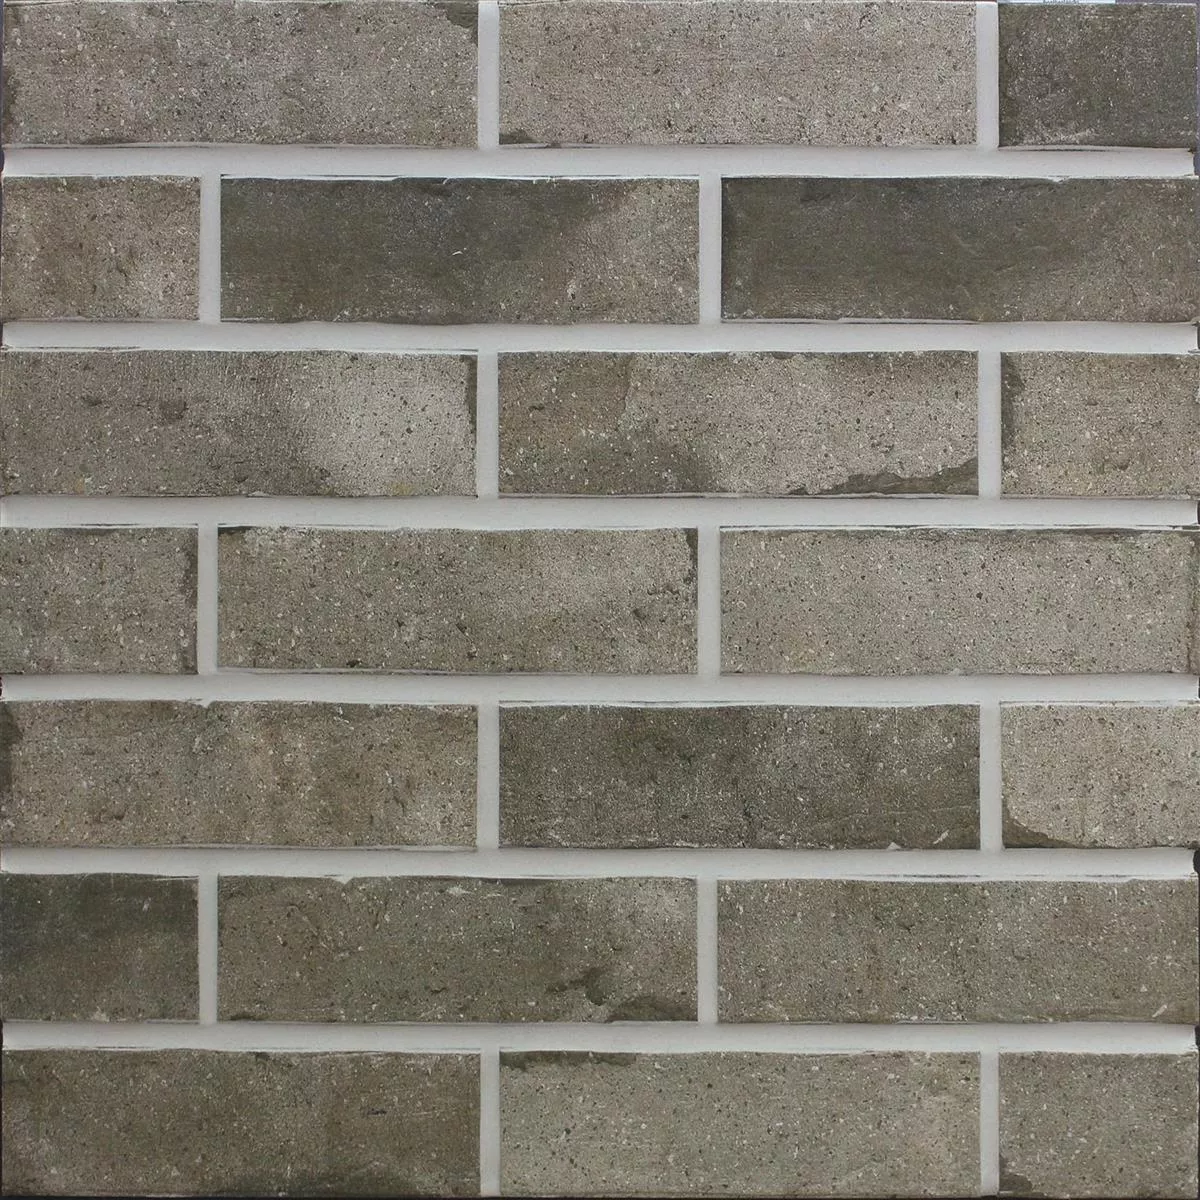 Sample Wall Tiles Leverkusen 7,1x24cm Straps Dirt